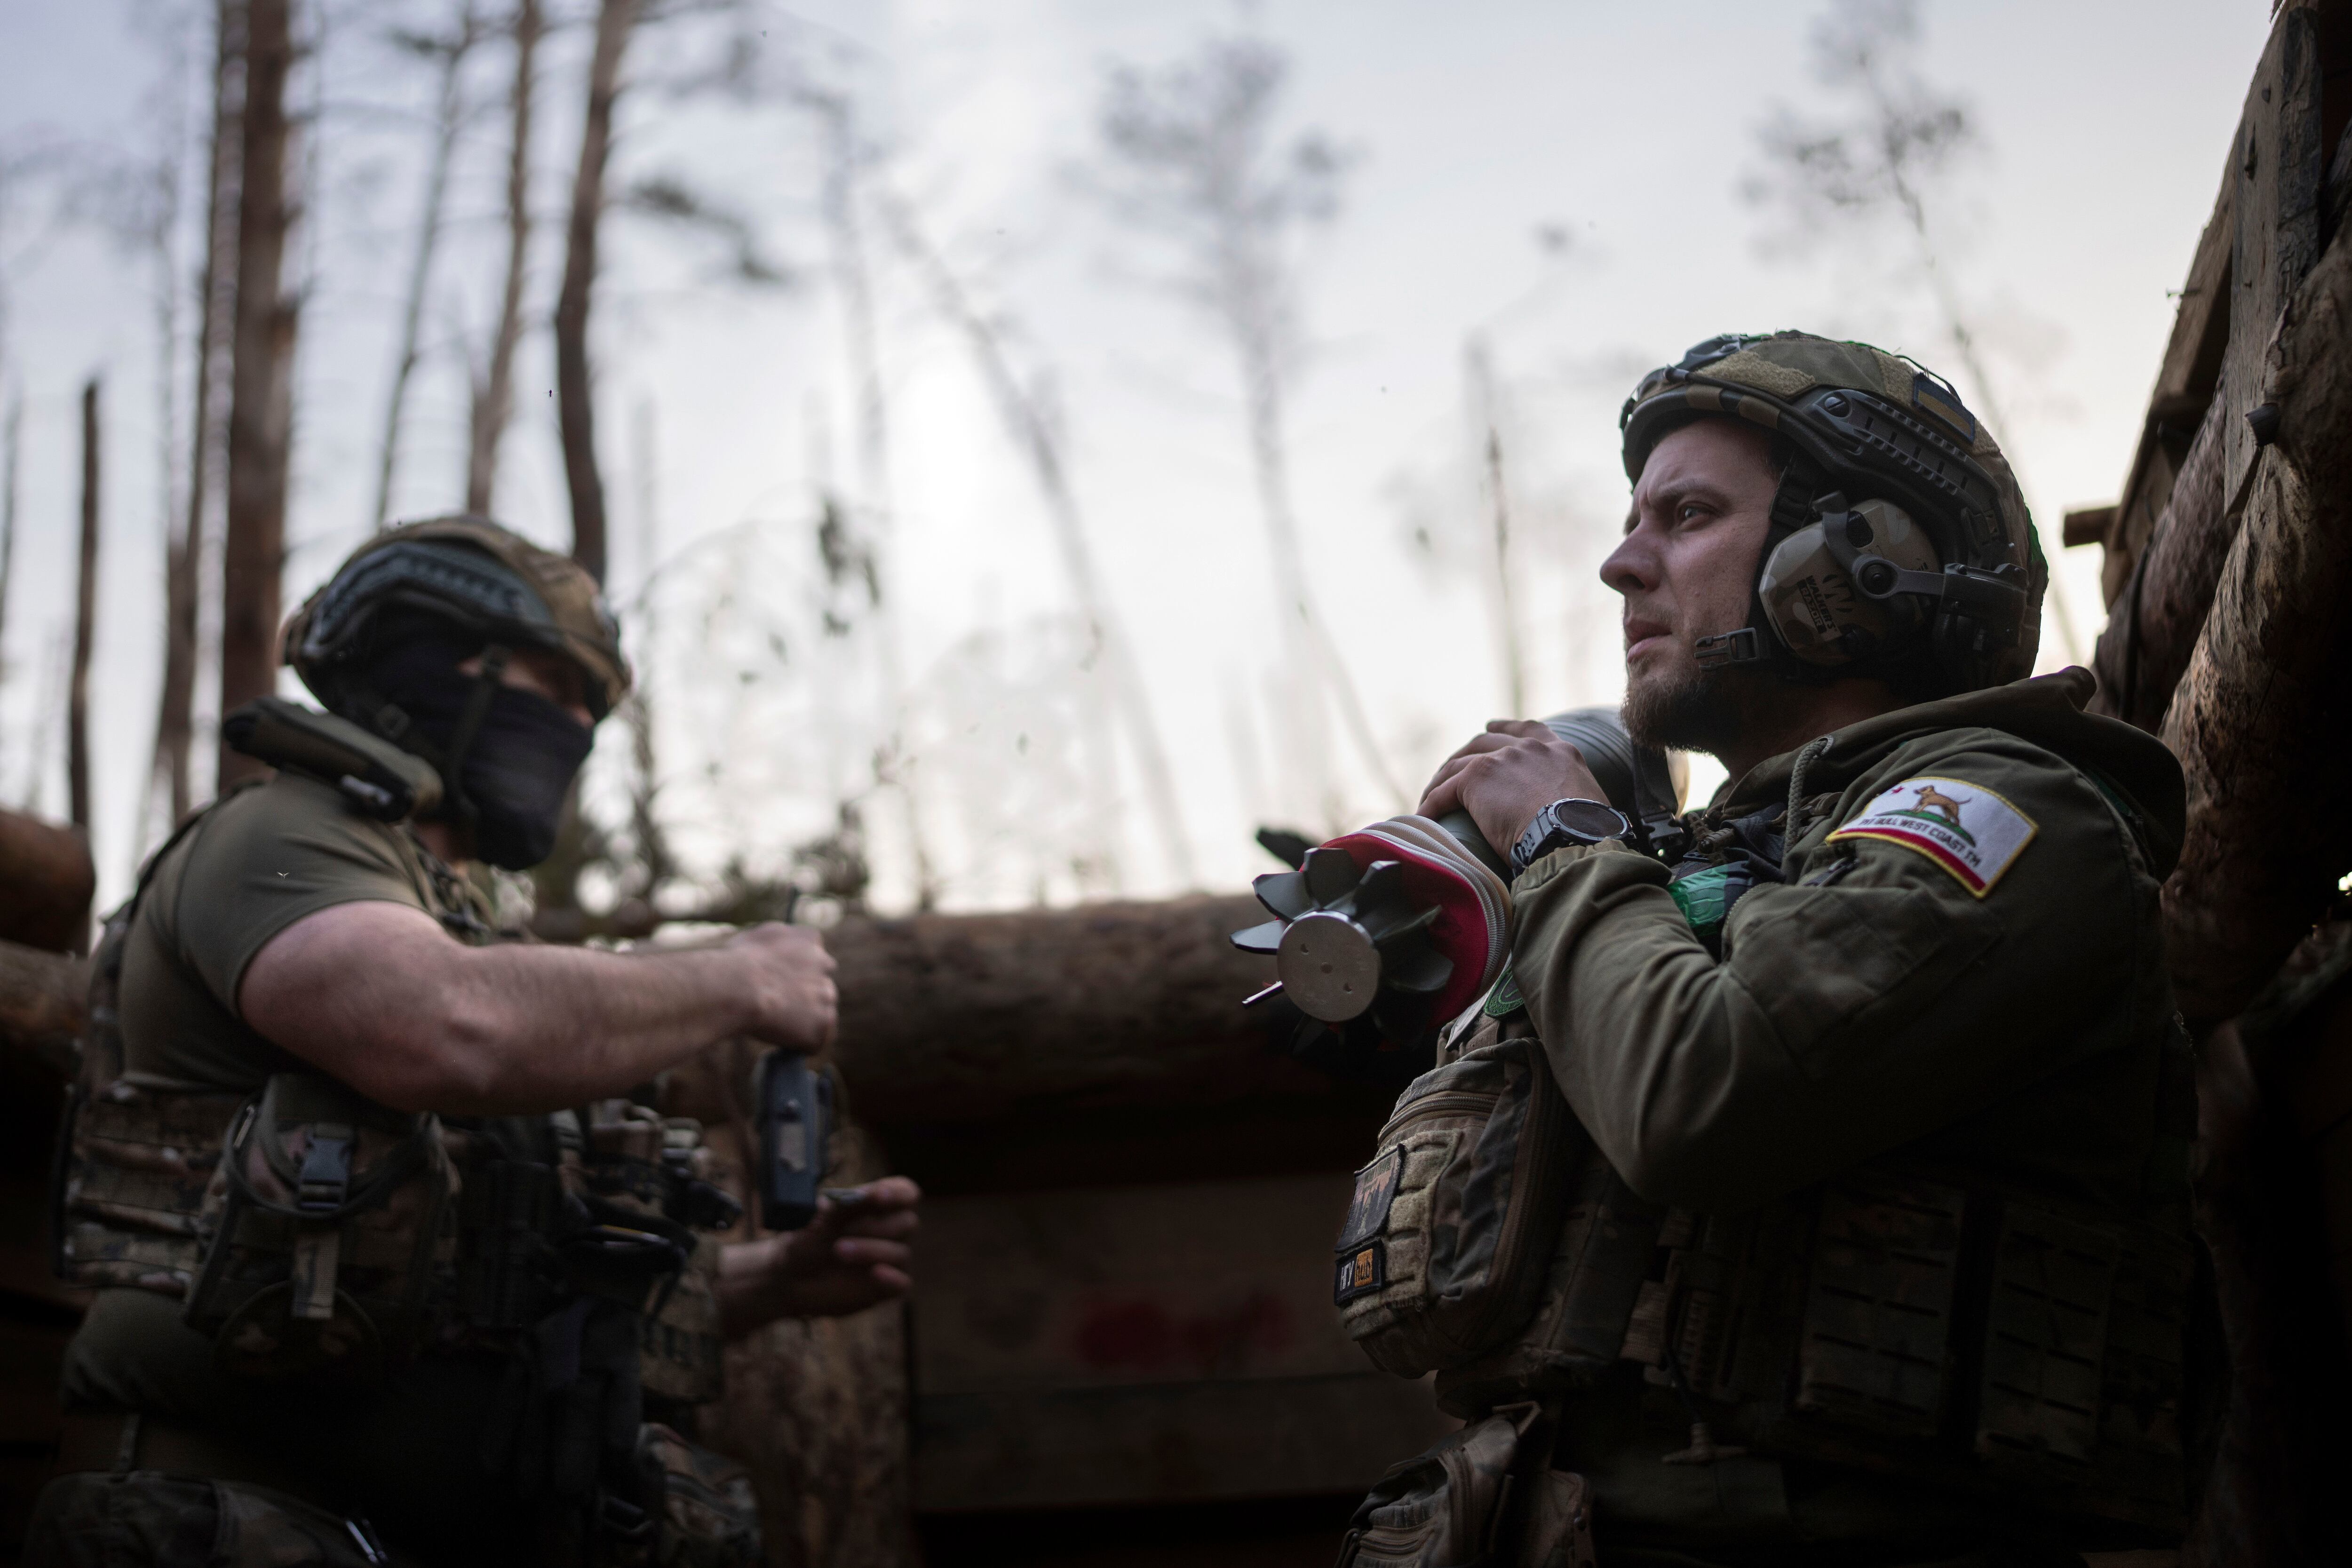 Un soldado ucraniano de la brigada Azov, conocido por su apodo Chaos, a la derecha, lleva un mortero mientras espera una orden de disparar en posiciones en torno a un kilómetro de distancia de las fuerzas rusas en el frente en dirección a Kreminna, en la región de Donetsk, Ucrania. (AP Foto/Alex Babenko)